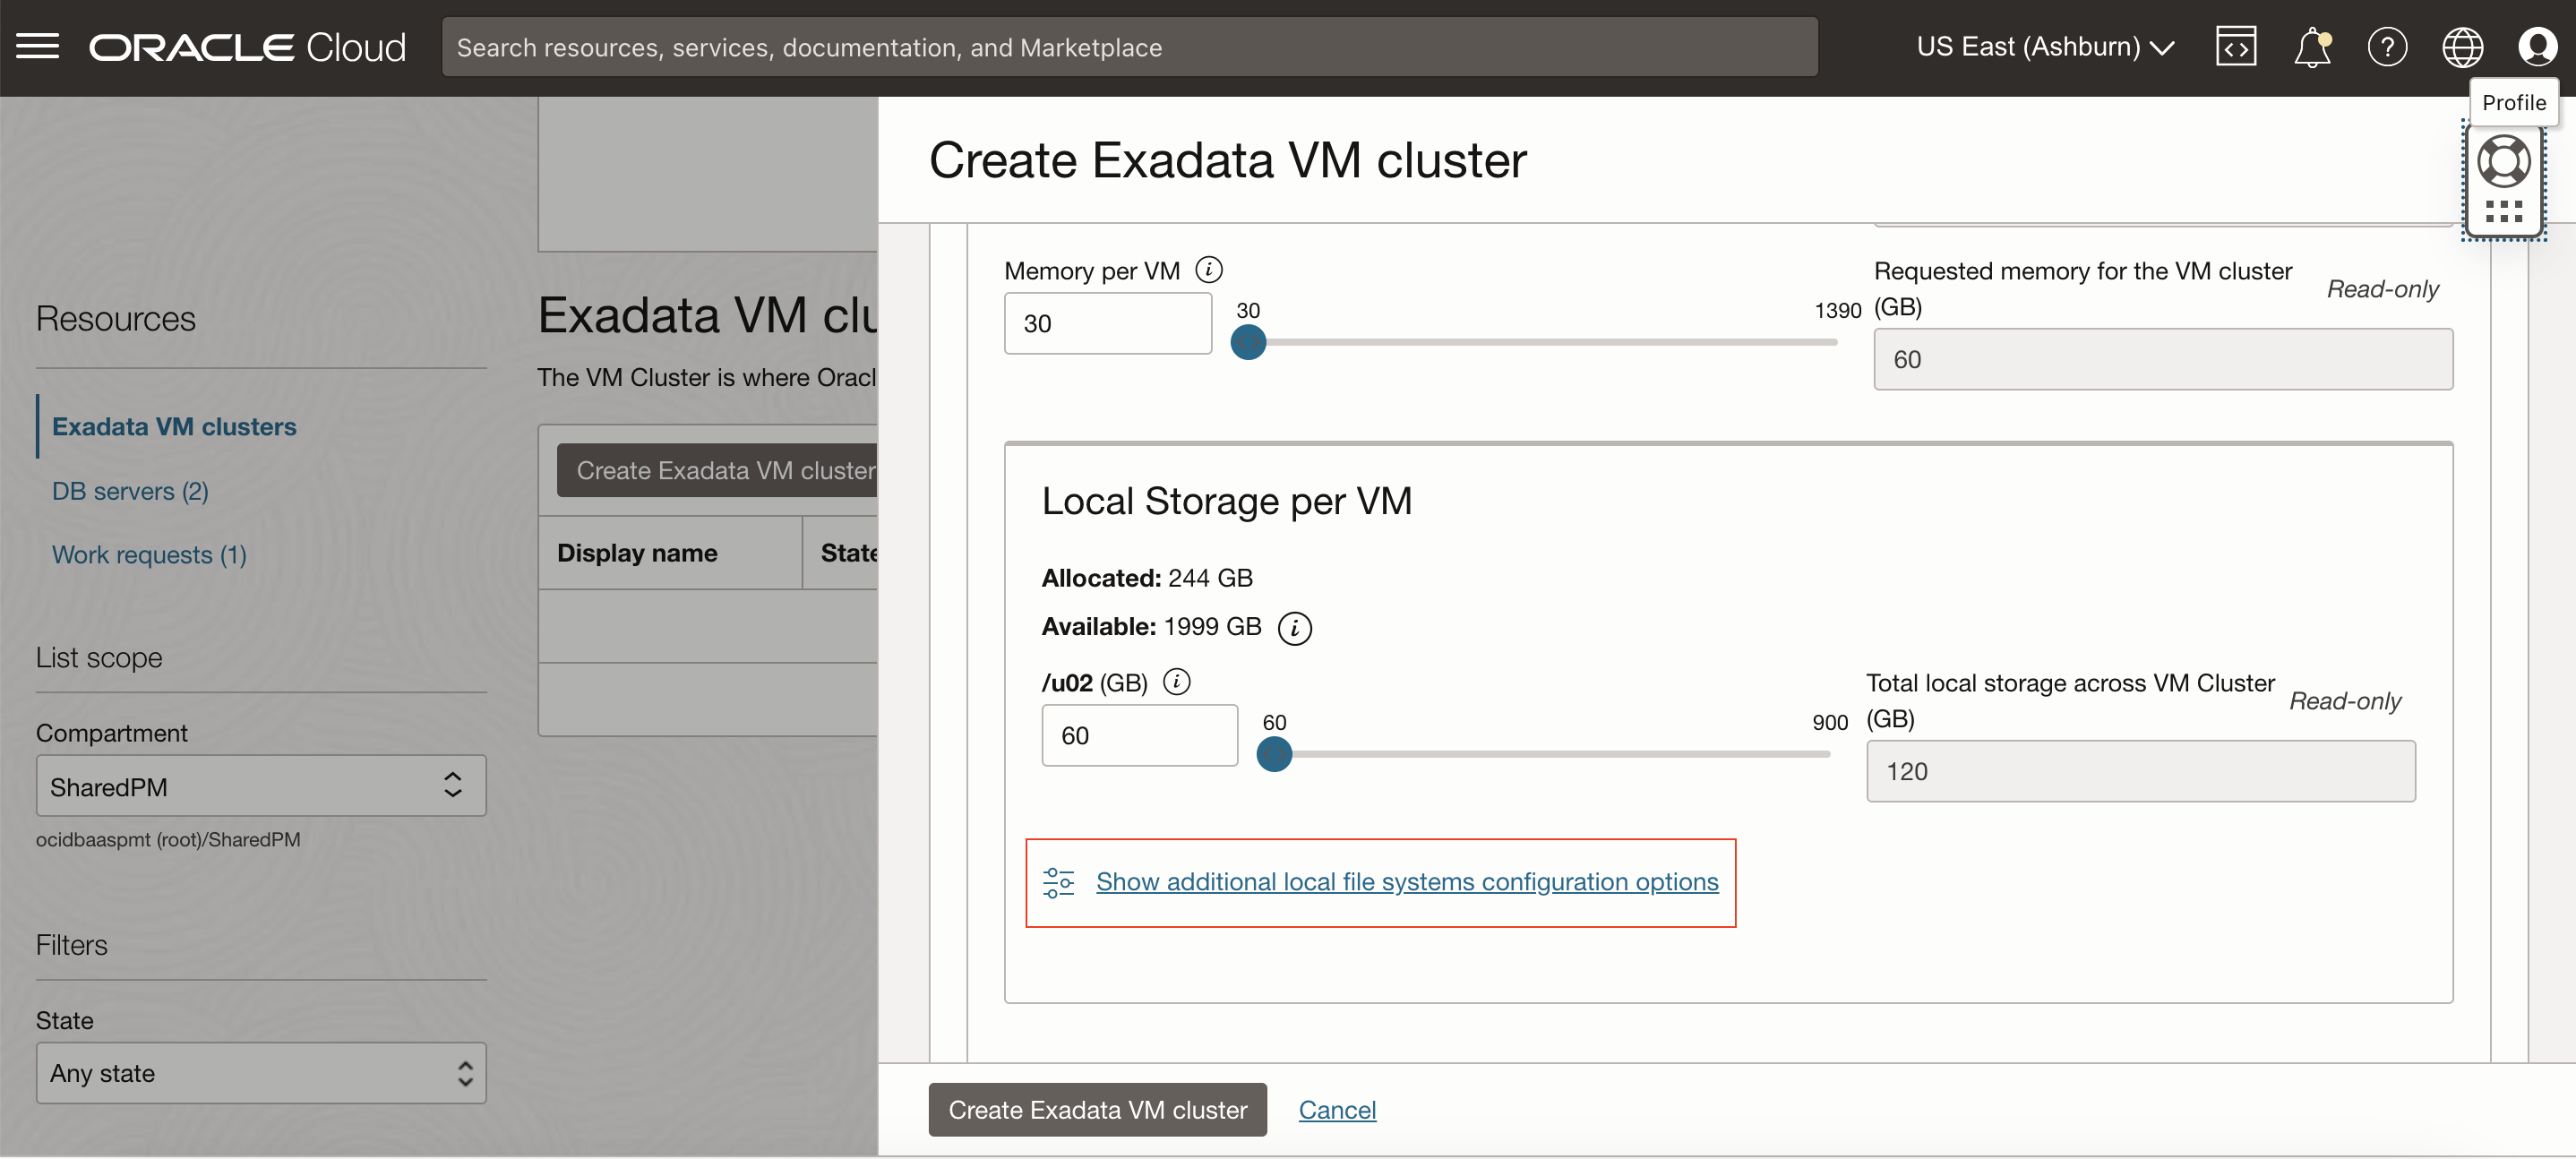 Imagen en la que se muestra la creación de un cluster de VM de Exadata en la consola